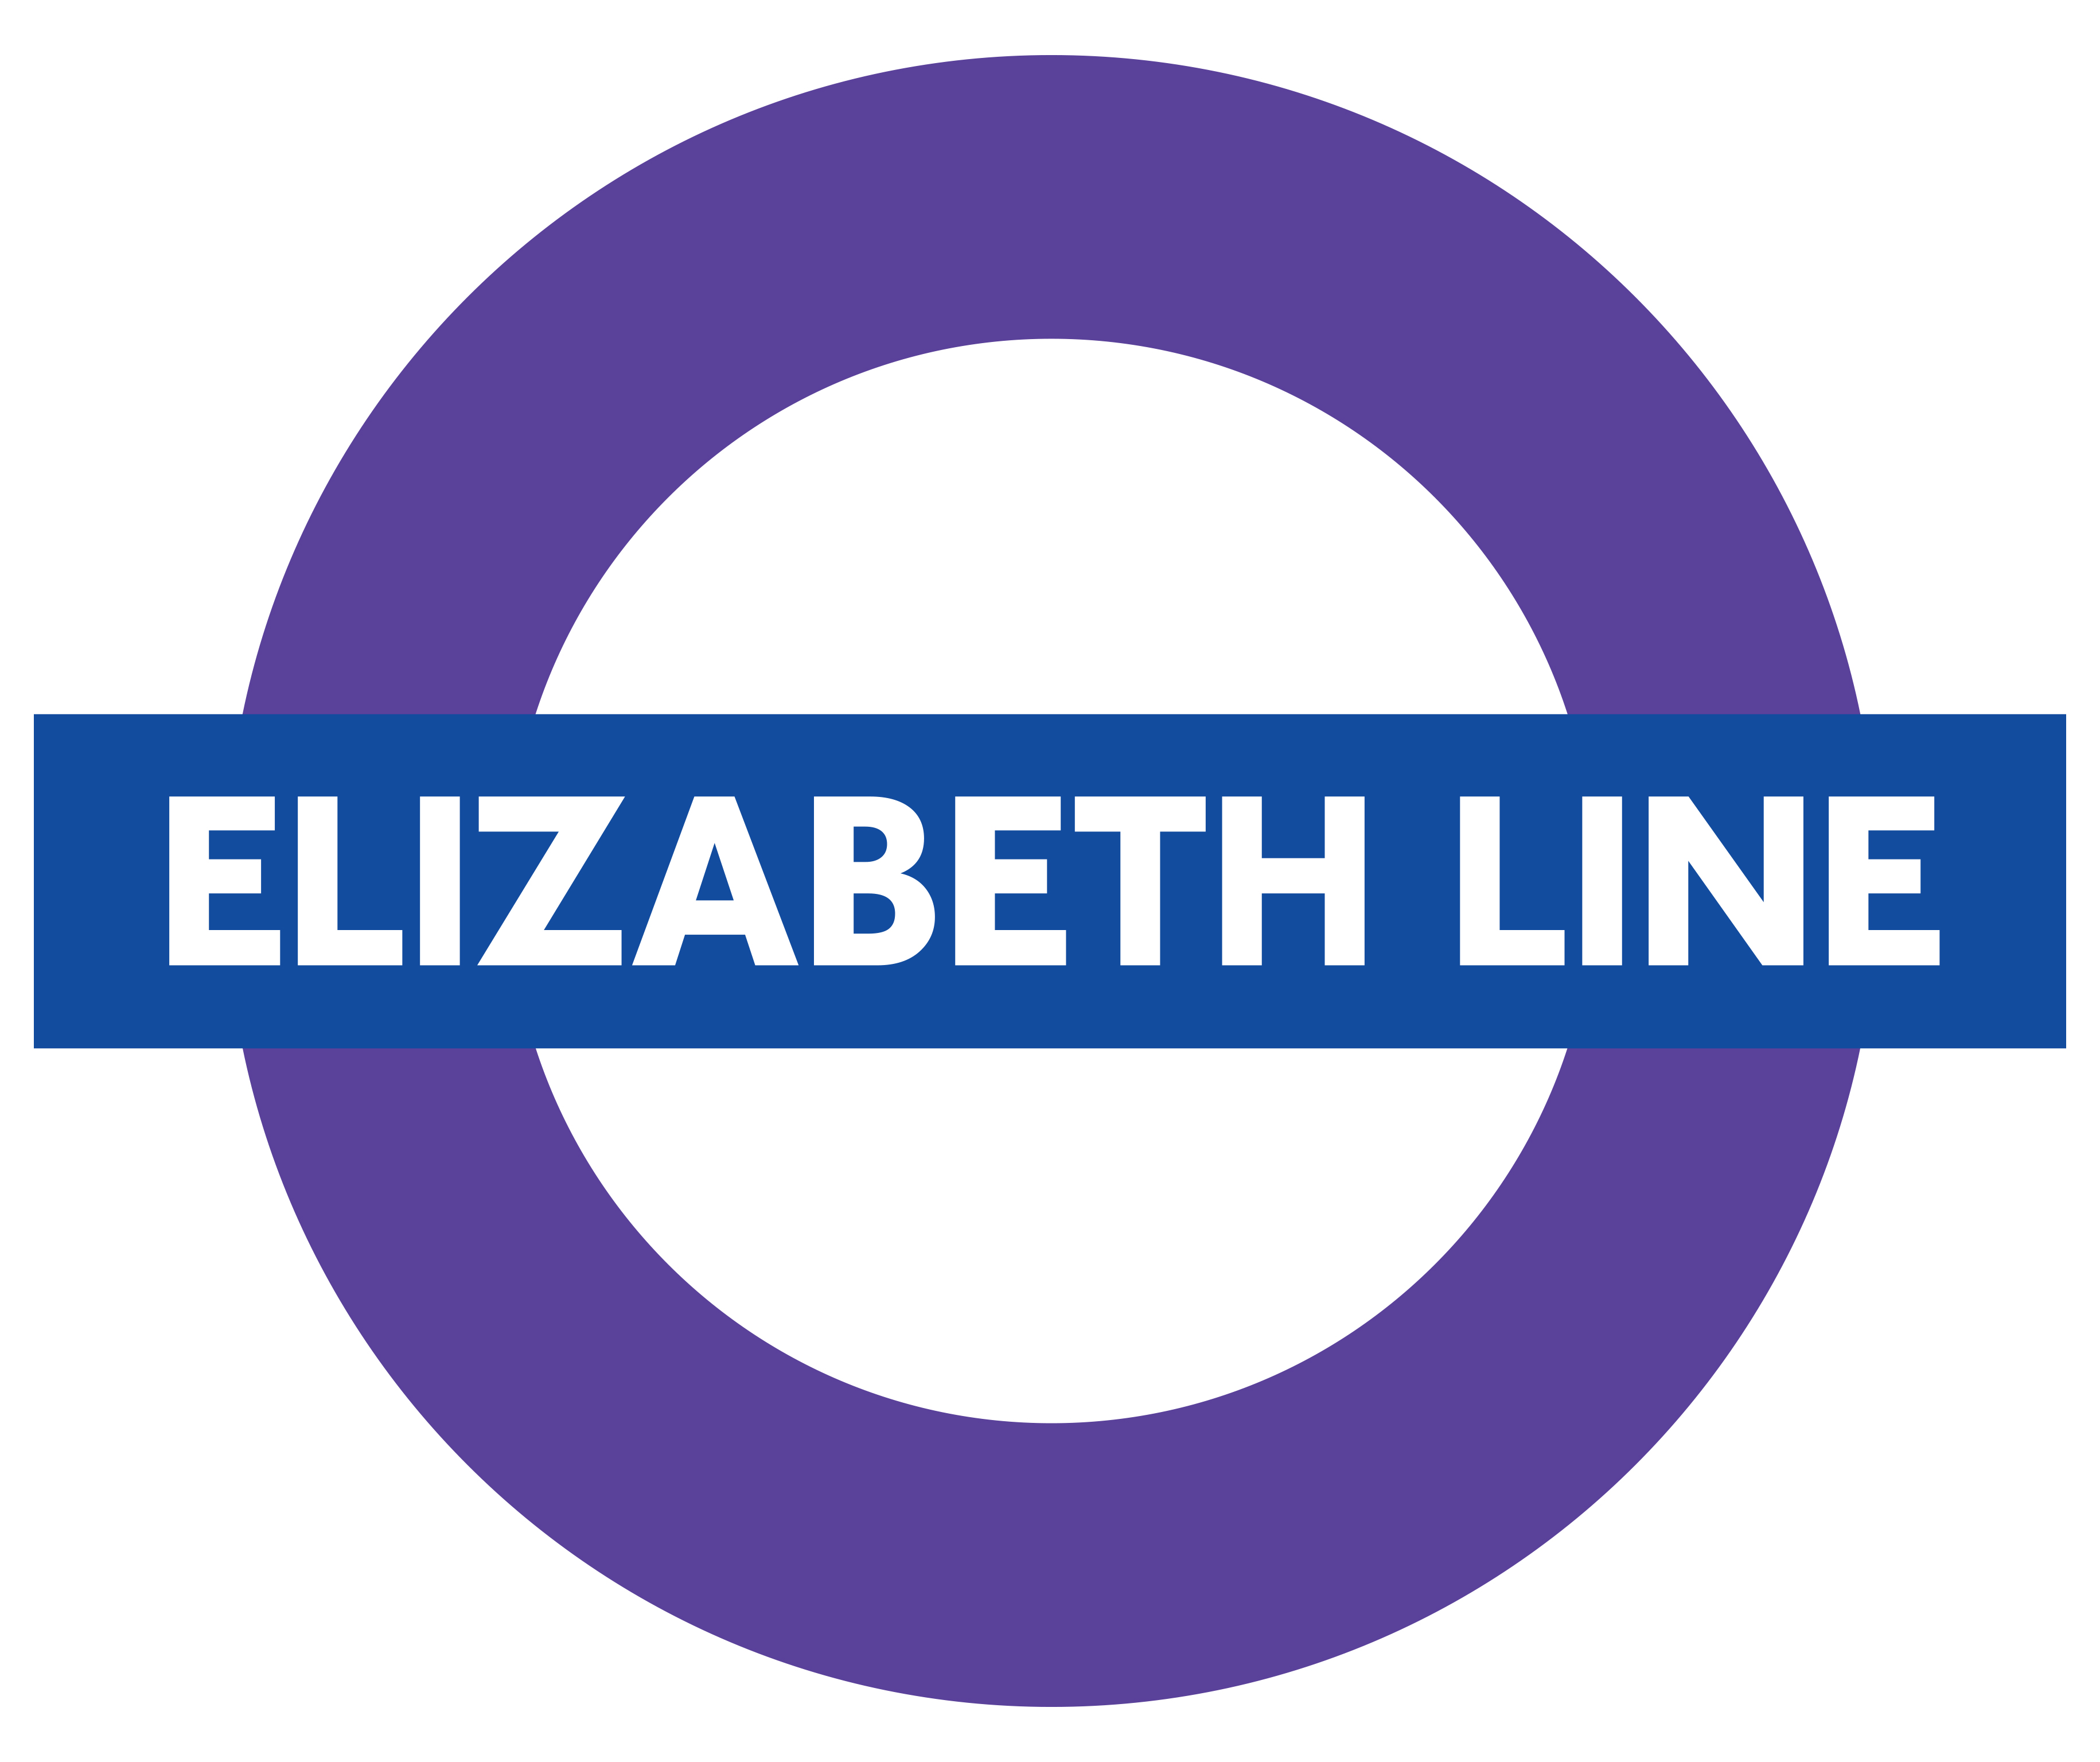 Elizabeth line: de nieuwste metrolijn van Londen